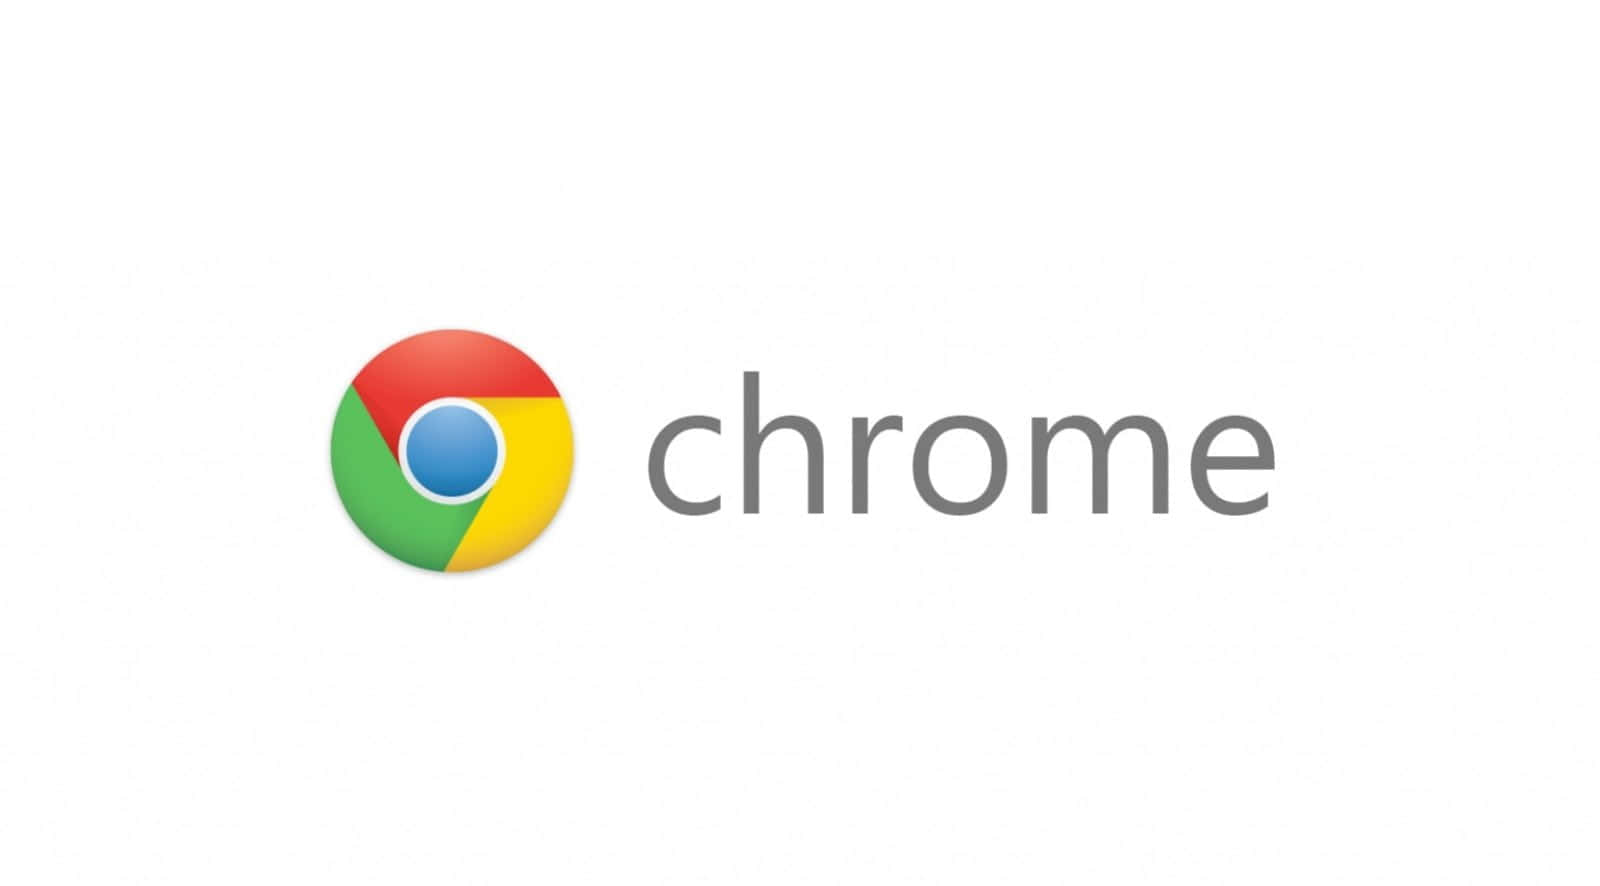 Enhvid Spiral På En Blå Baggrund I Google Chrome-logoet.